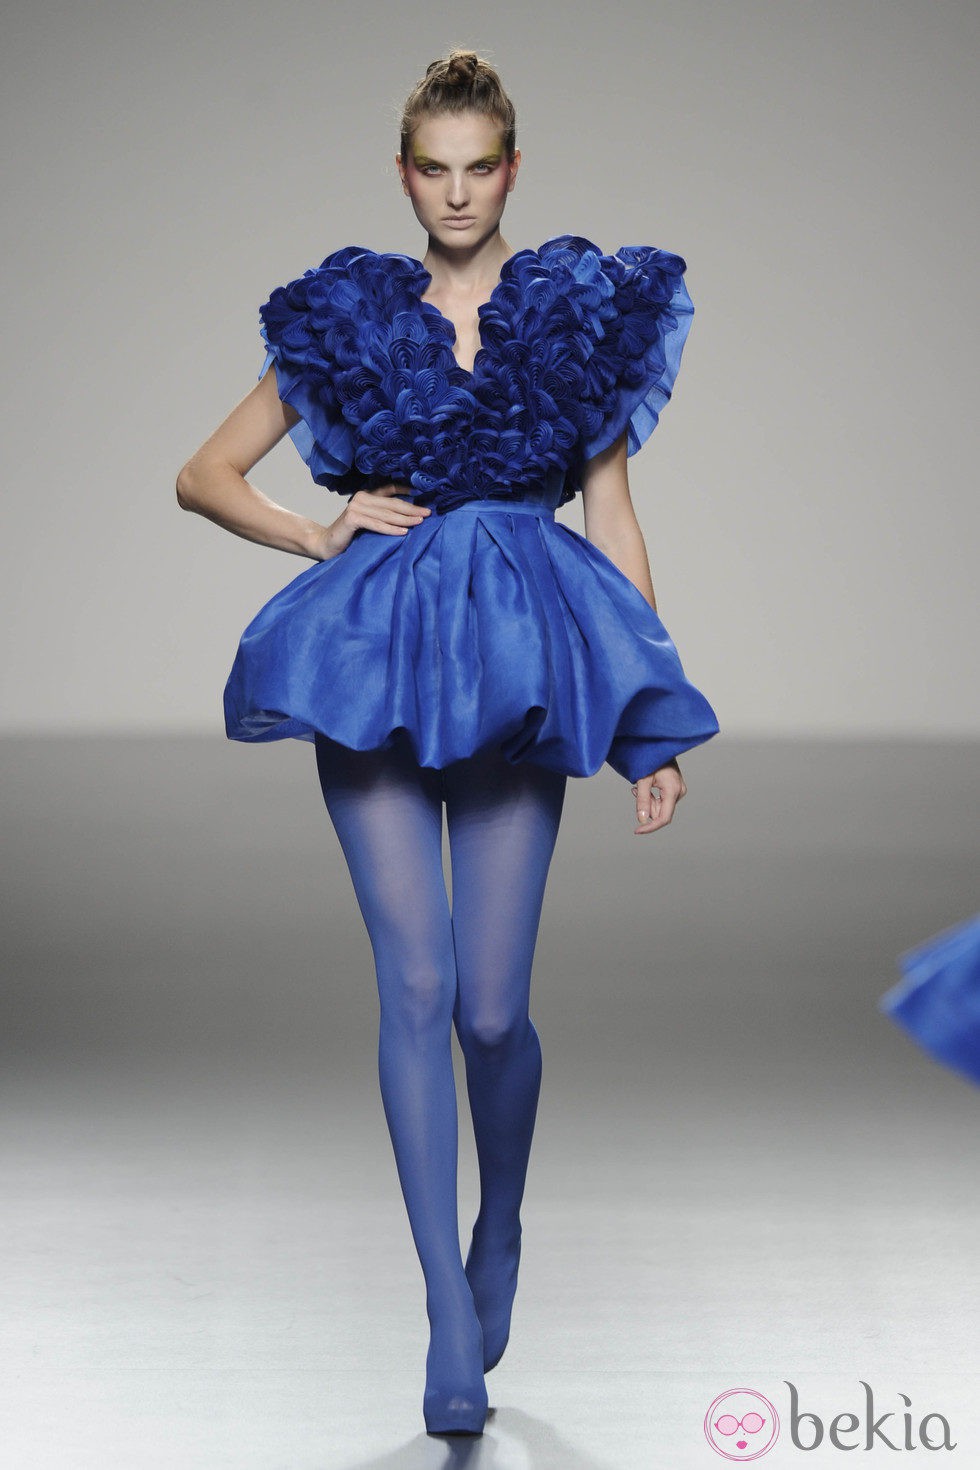 Vestido azul eléctrico corto armado y medias a juego de la colección primavera/verano 2013 de Eva Soto